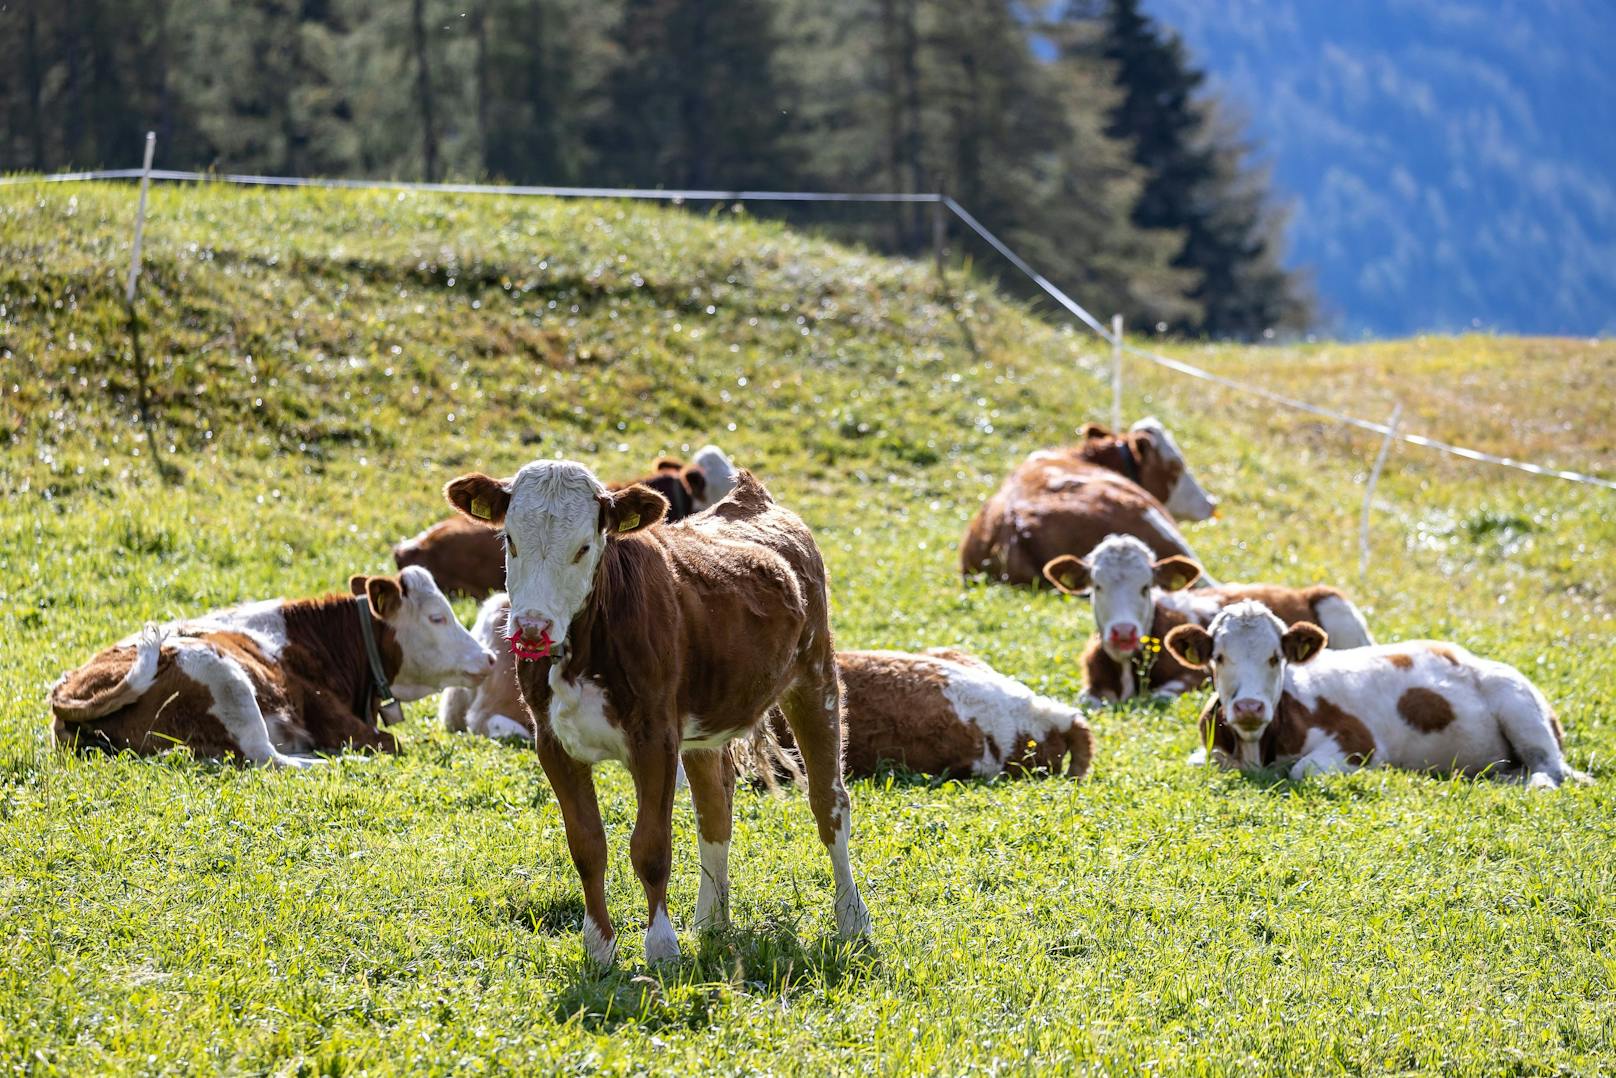 Auf einer Weide bei Waidhofen/Ybbs fanden Passanten eine bereits verweste Kuh samt Kalb. (Symbolbild)&nbsp;